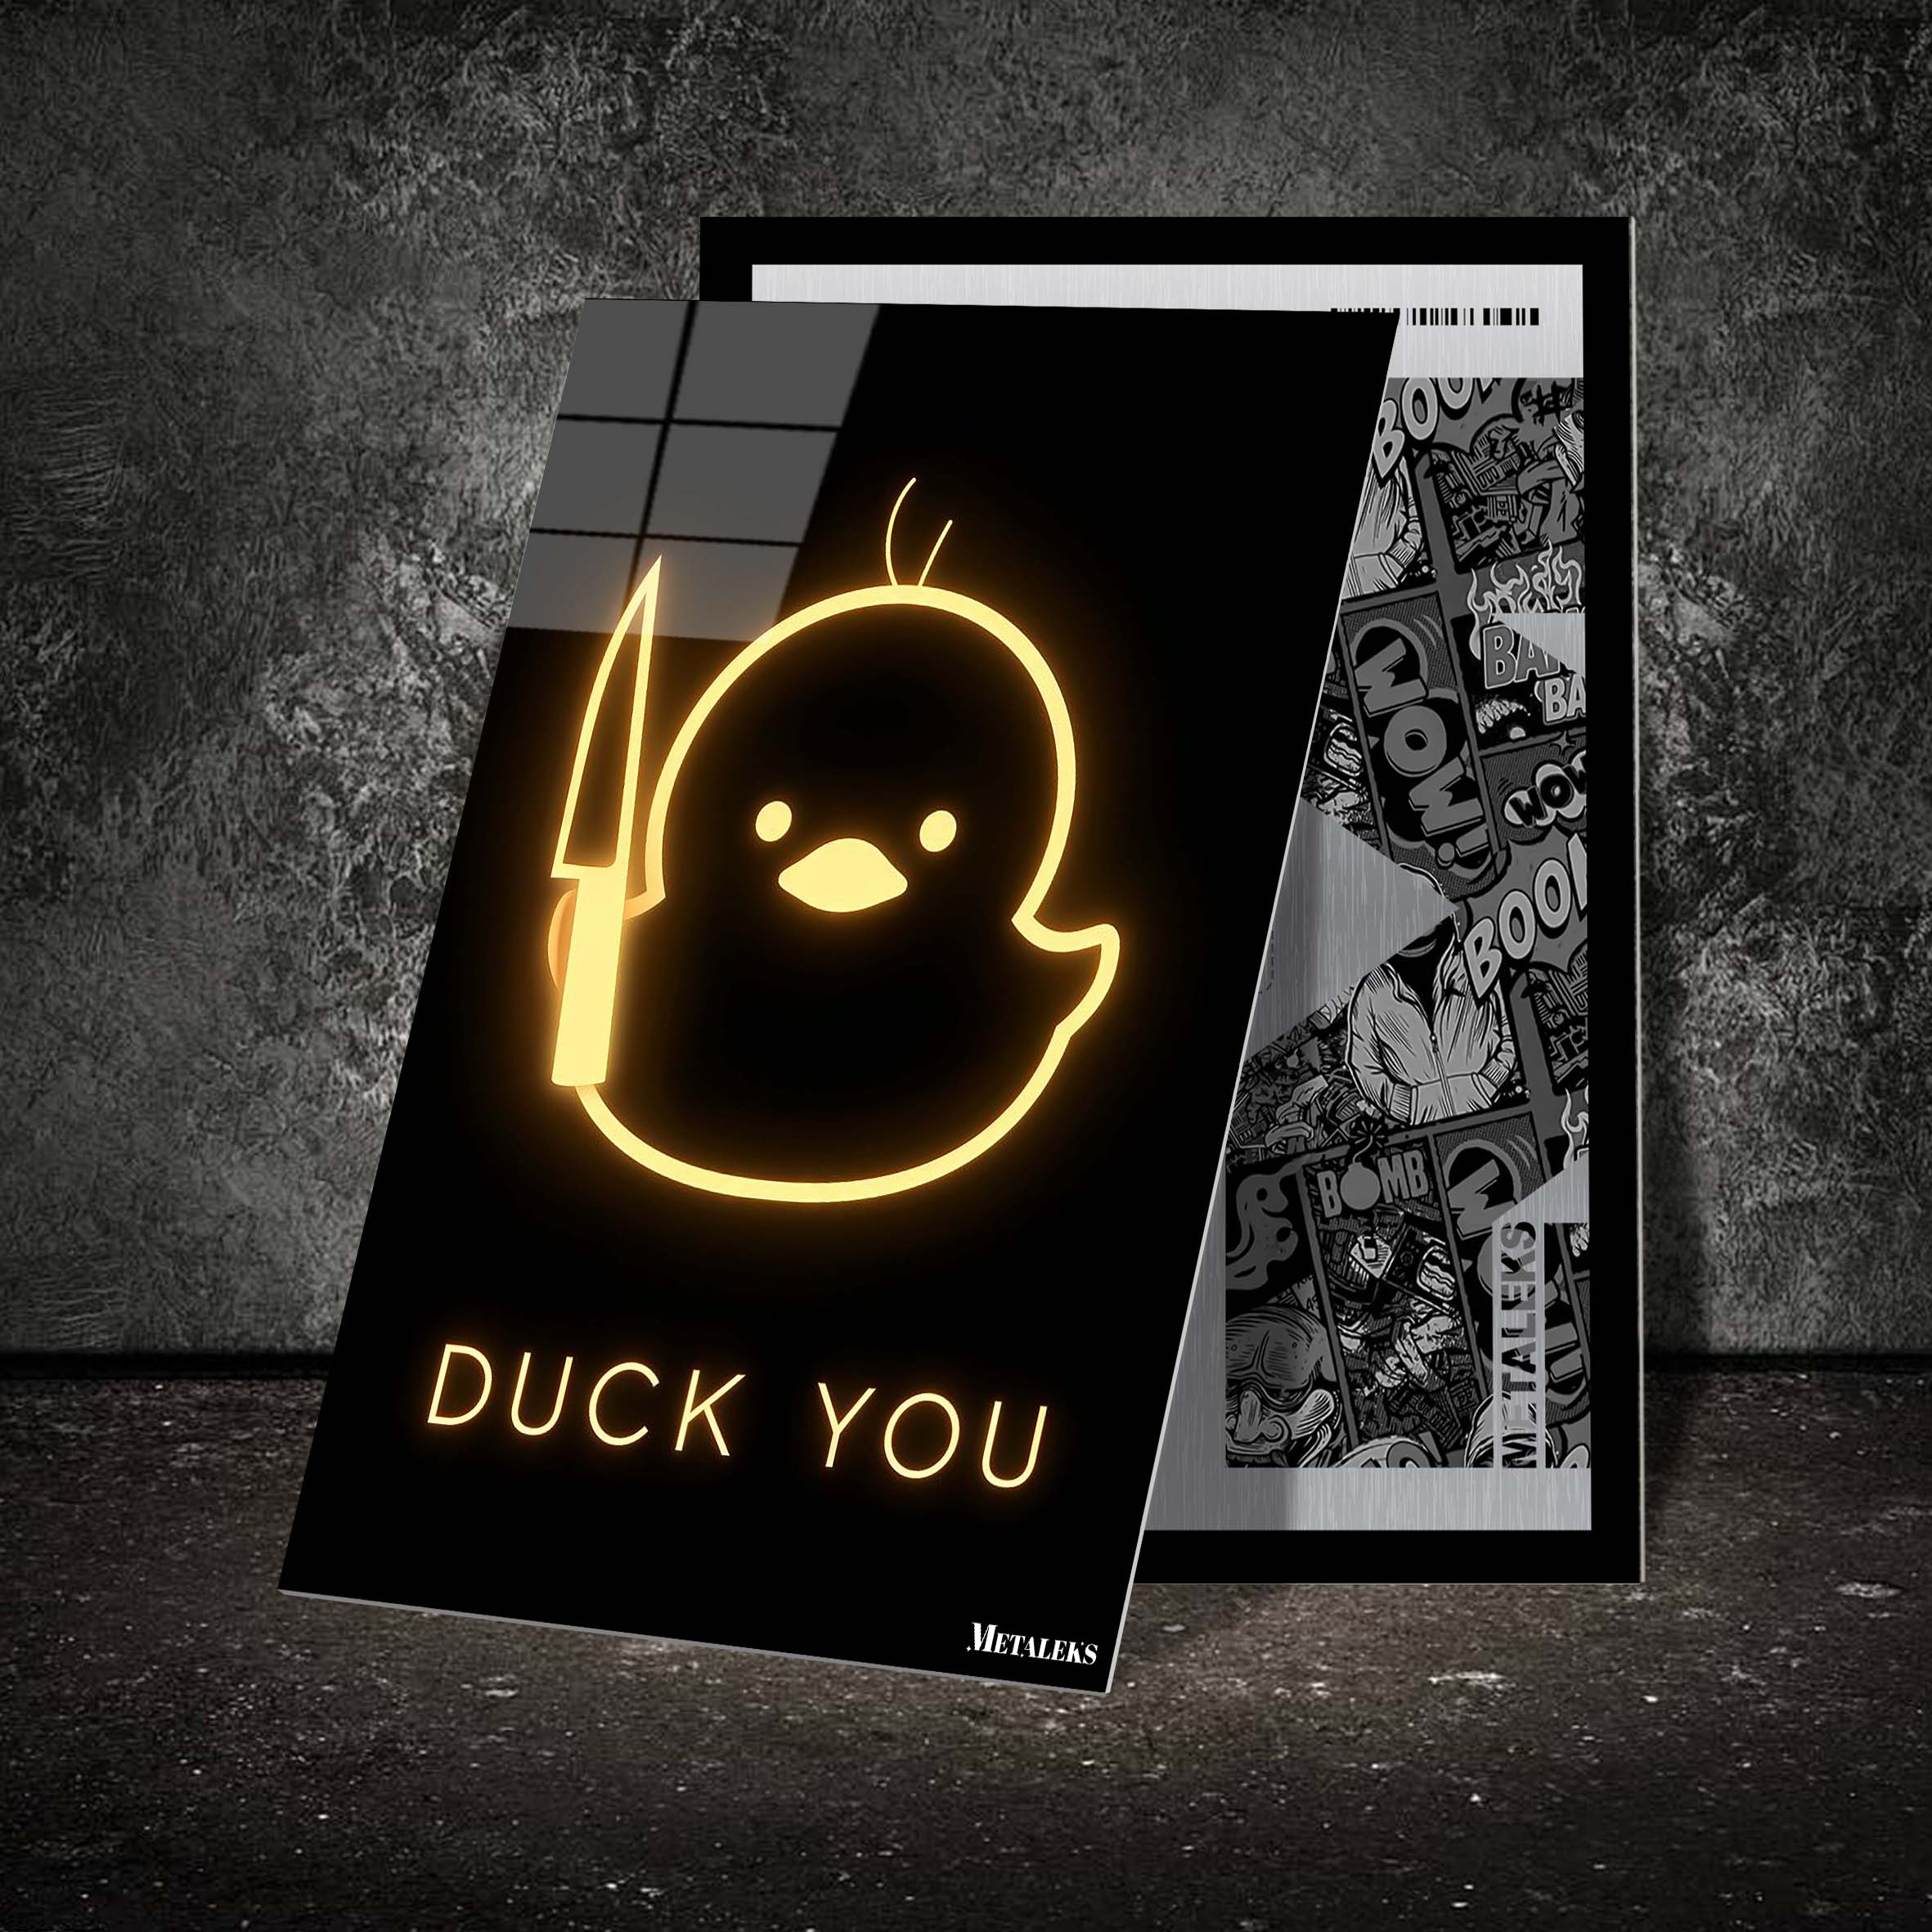 Neon Duck You-designed by @Vizio